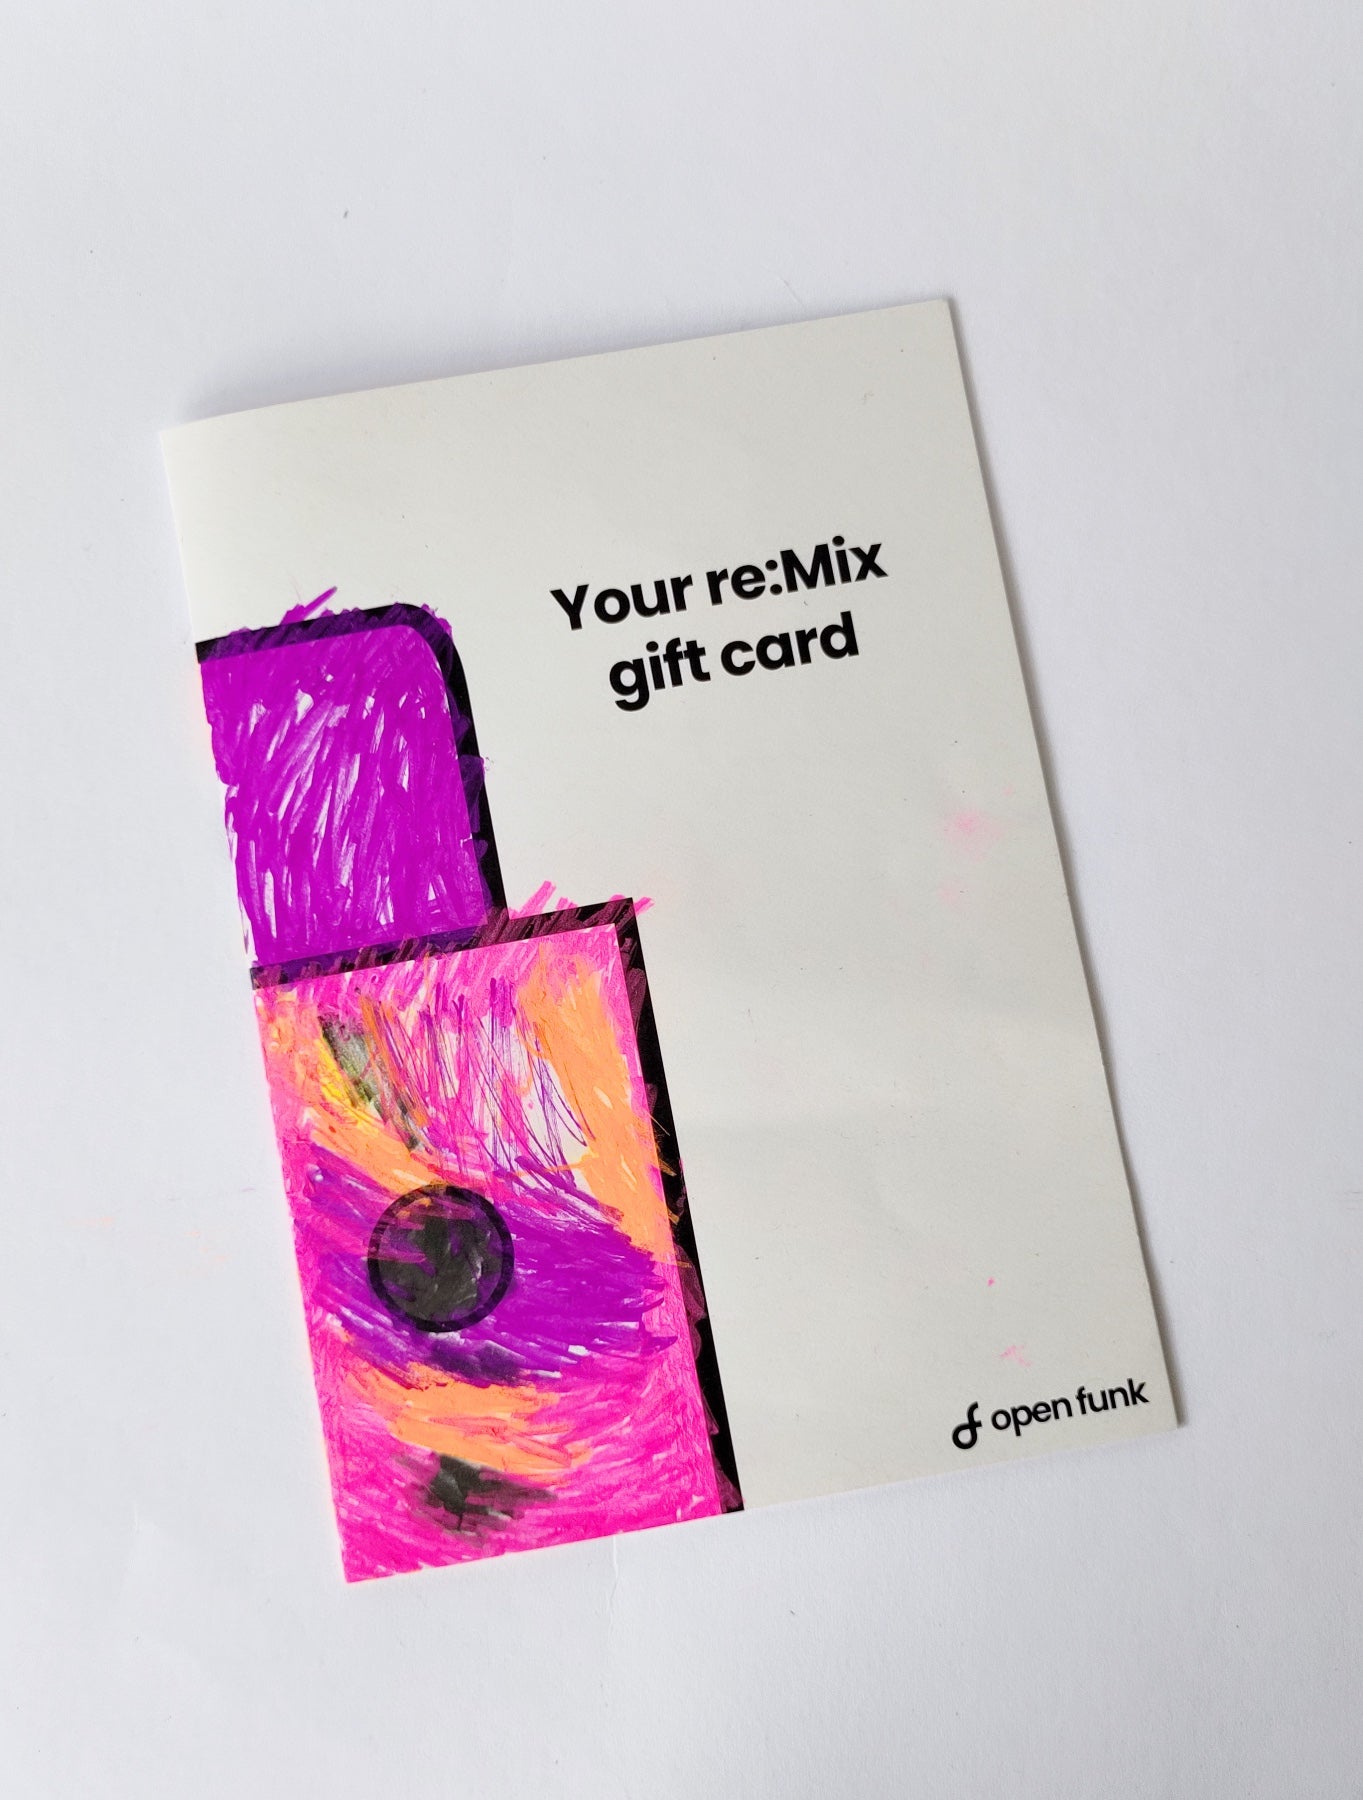 re:Mix creative gift card Geschenk Gutschein Carte-Cadeaux